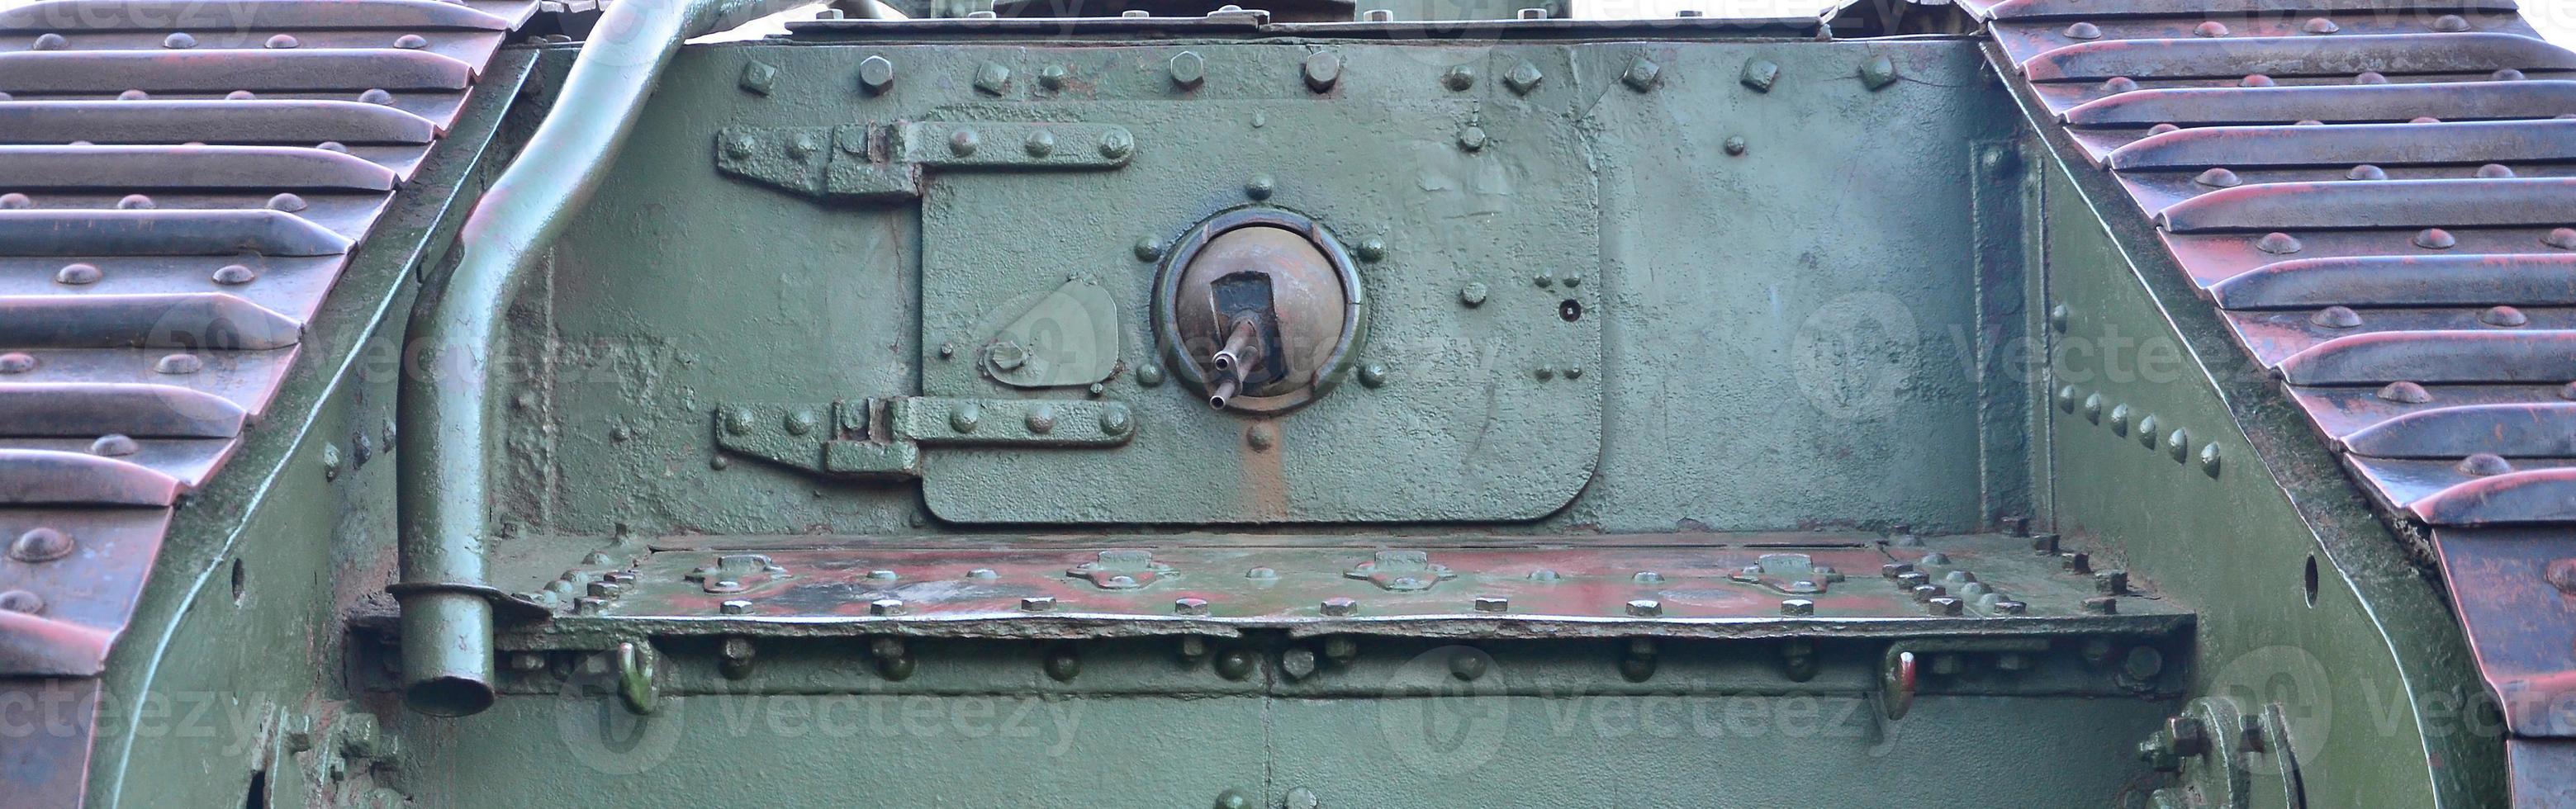 Textur der Tankseitenwand, aus Metall und verstärkt mit einer Vielzahl von Schrauben und Nieten foto